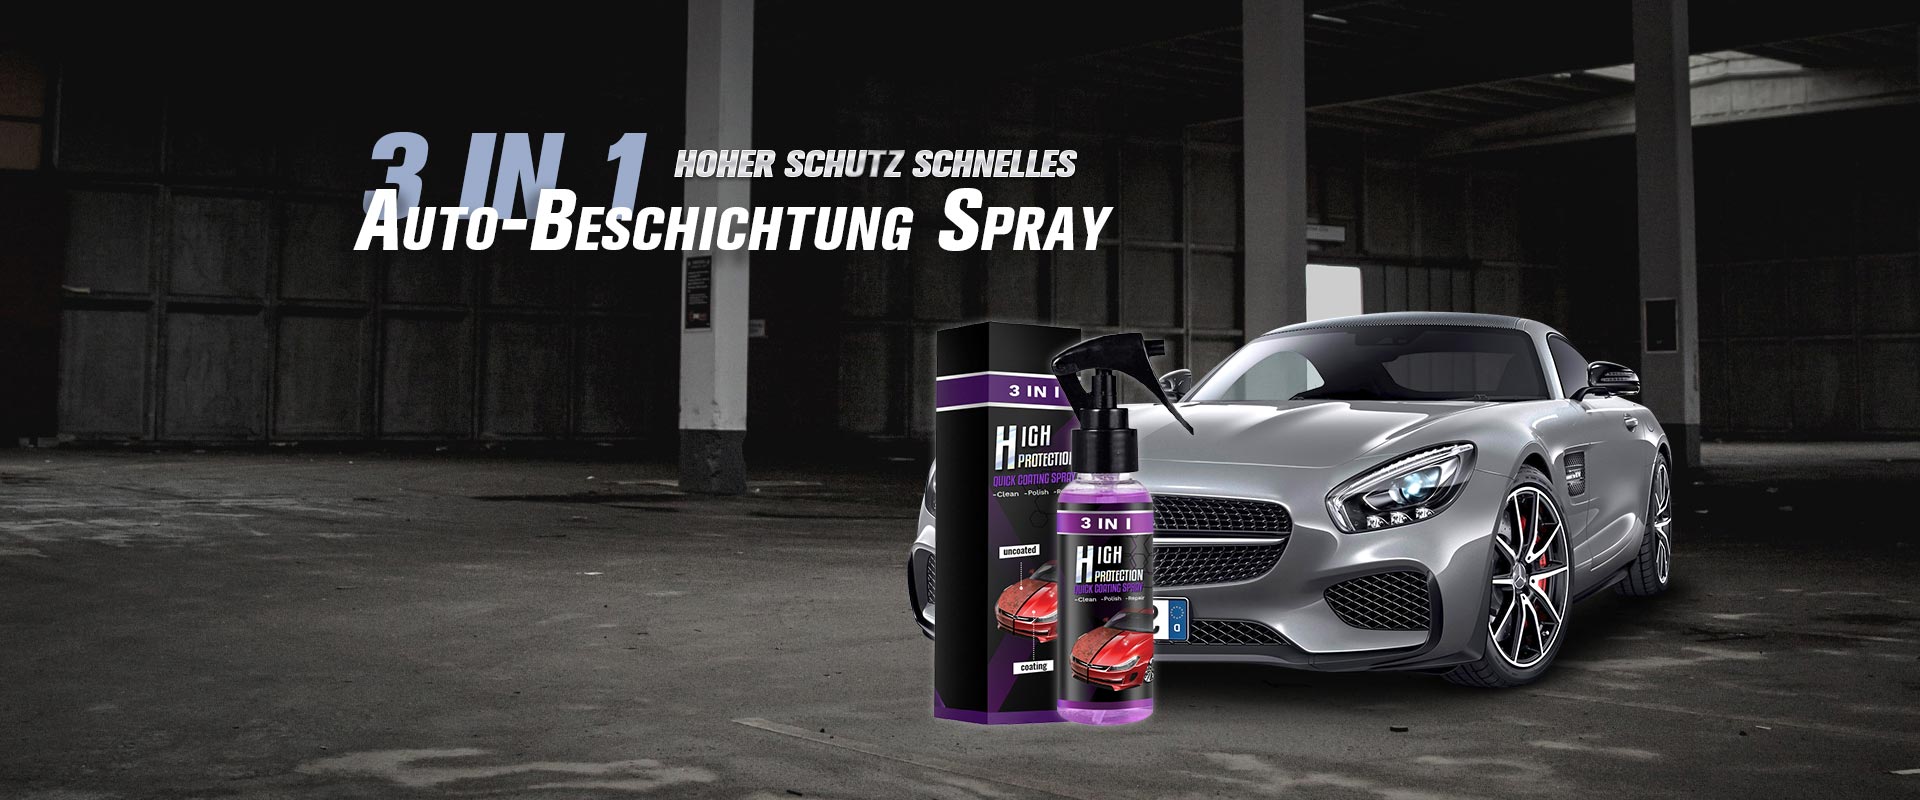 3-IN-1 Hoher Schutz Schnelles Auto-Beschichtung Spray – kissews